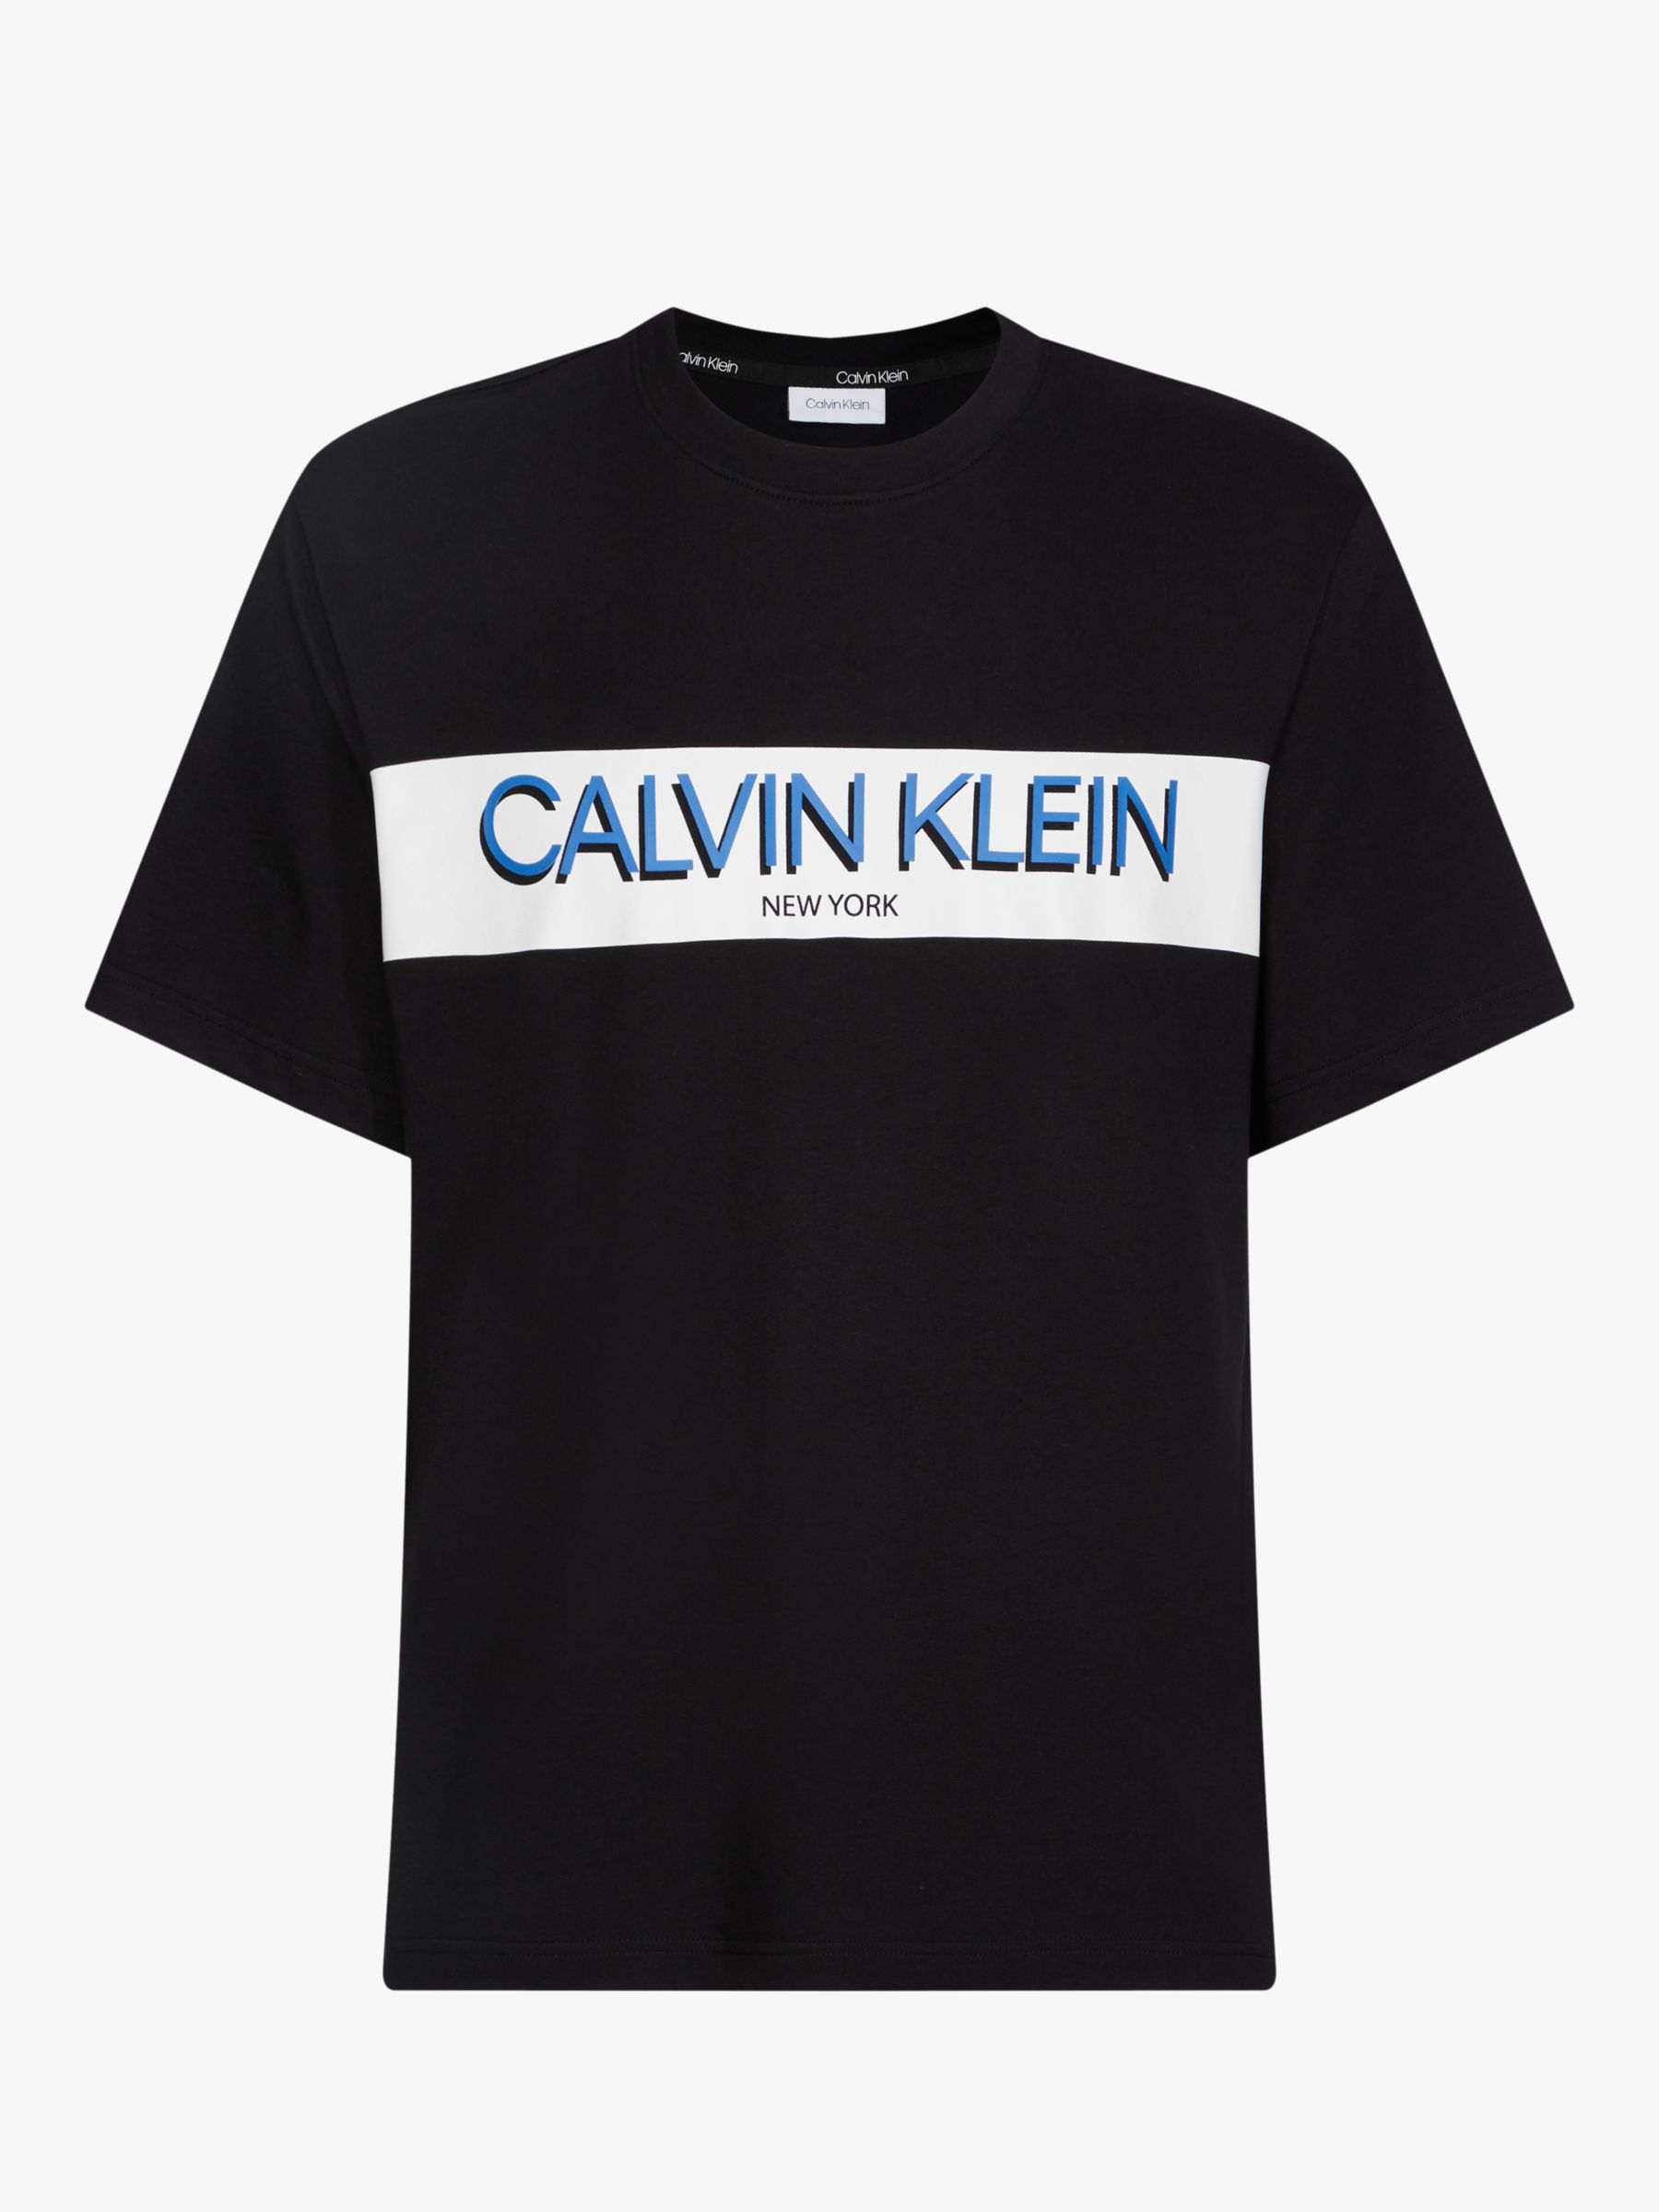 Calvin Klein New York Logo T-Shirt at John Lewis & Partners